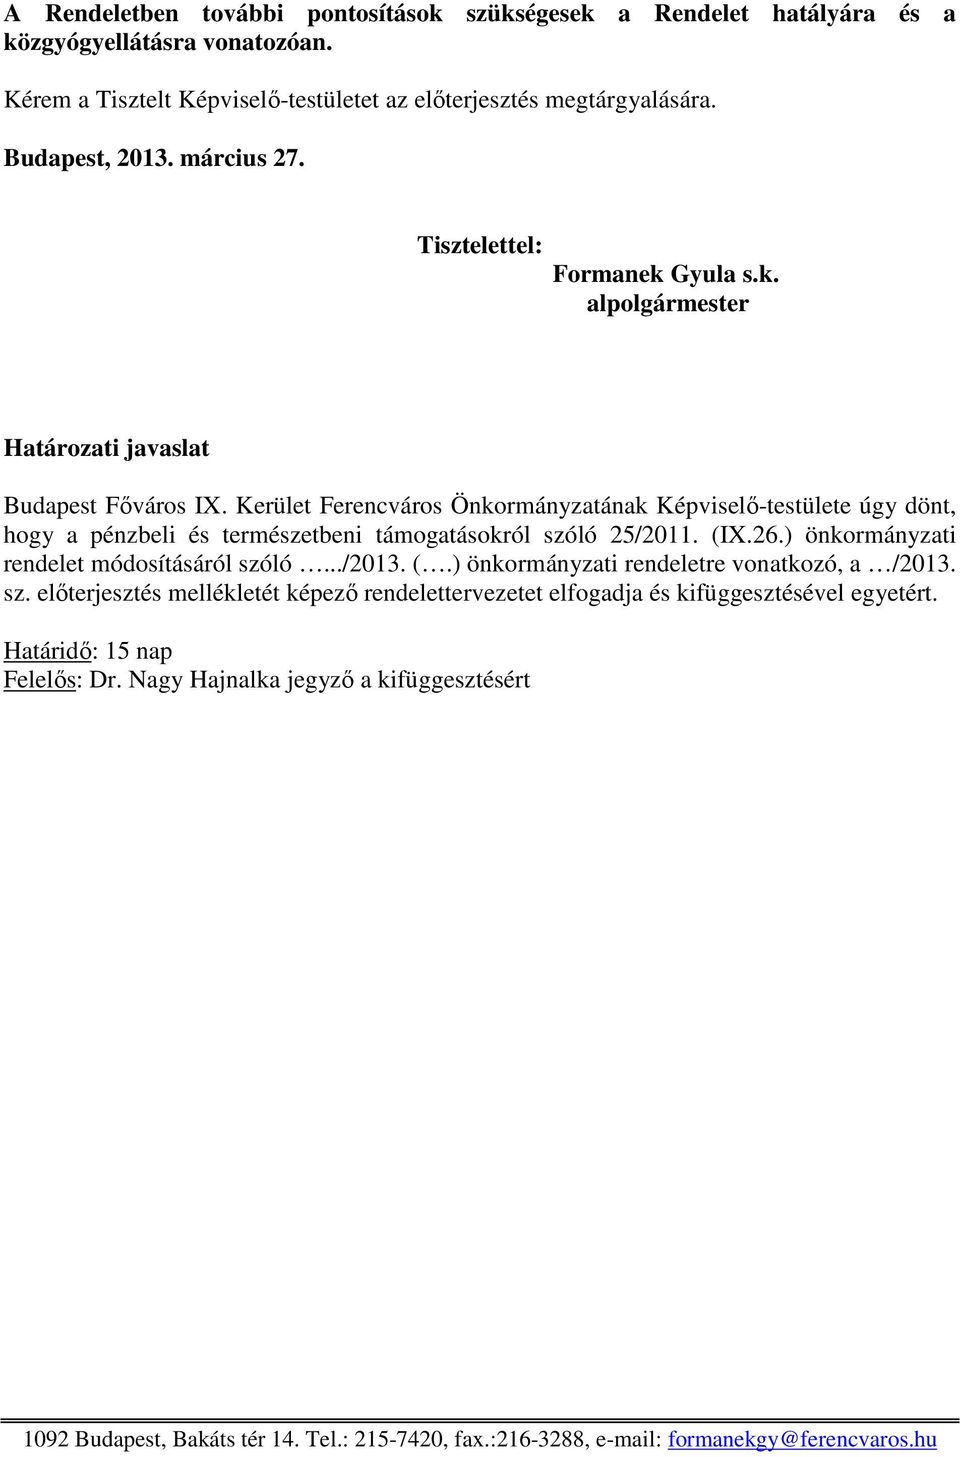 Kerület Ferencváros Önkormányzatának Képviselő-testülete úgy dönt, hogy a pénzbeli és természetbeni támogatásokról szóló 25/2011. (IX.26.) önkormányzati rendelet módosításáról szóló.../2013. (.) önkormányzati rendeletre vonatkozó, a /2013.